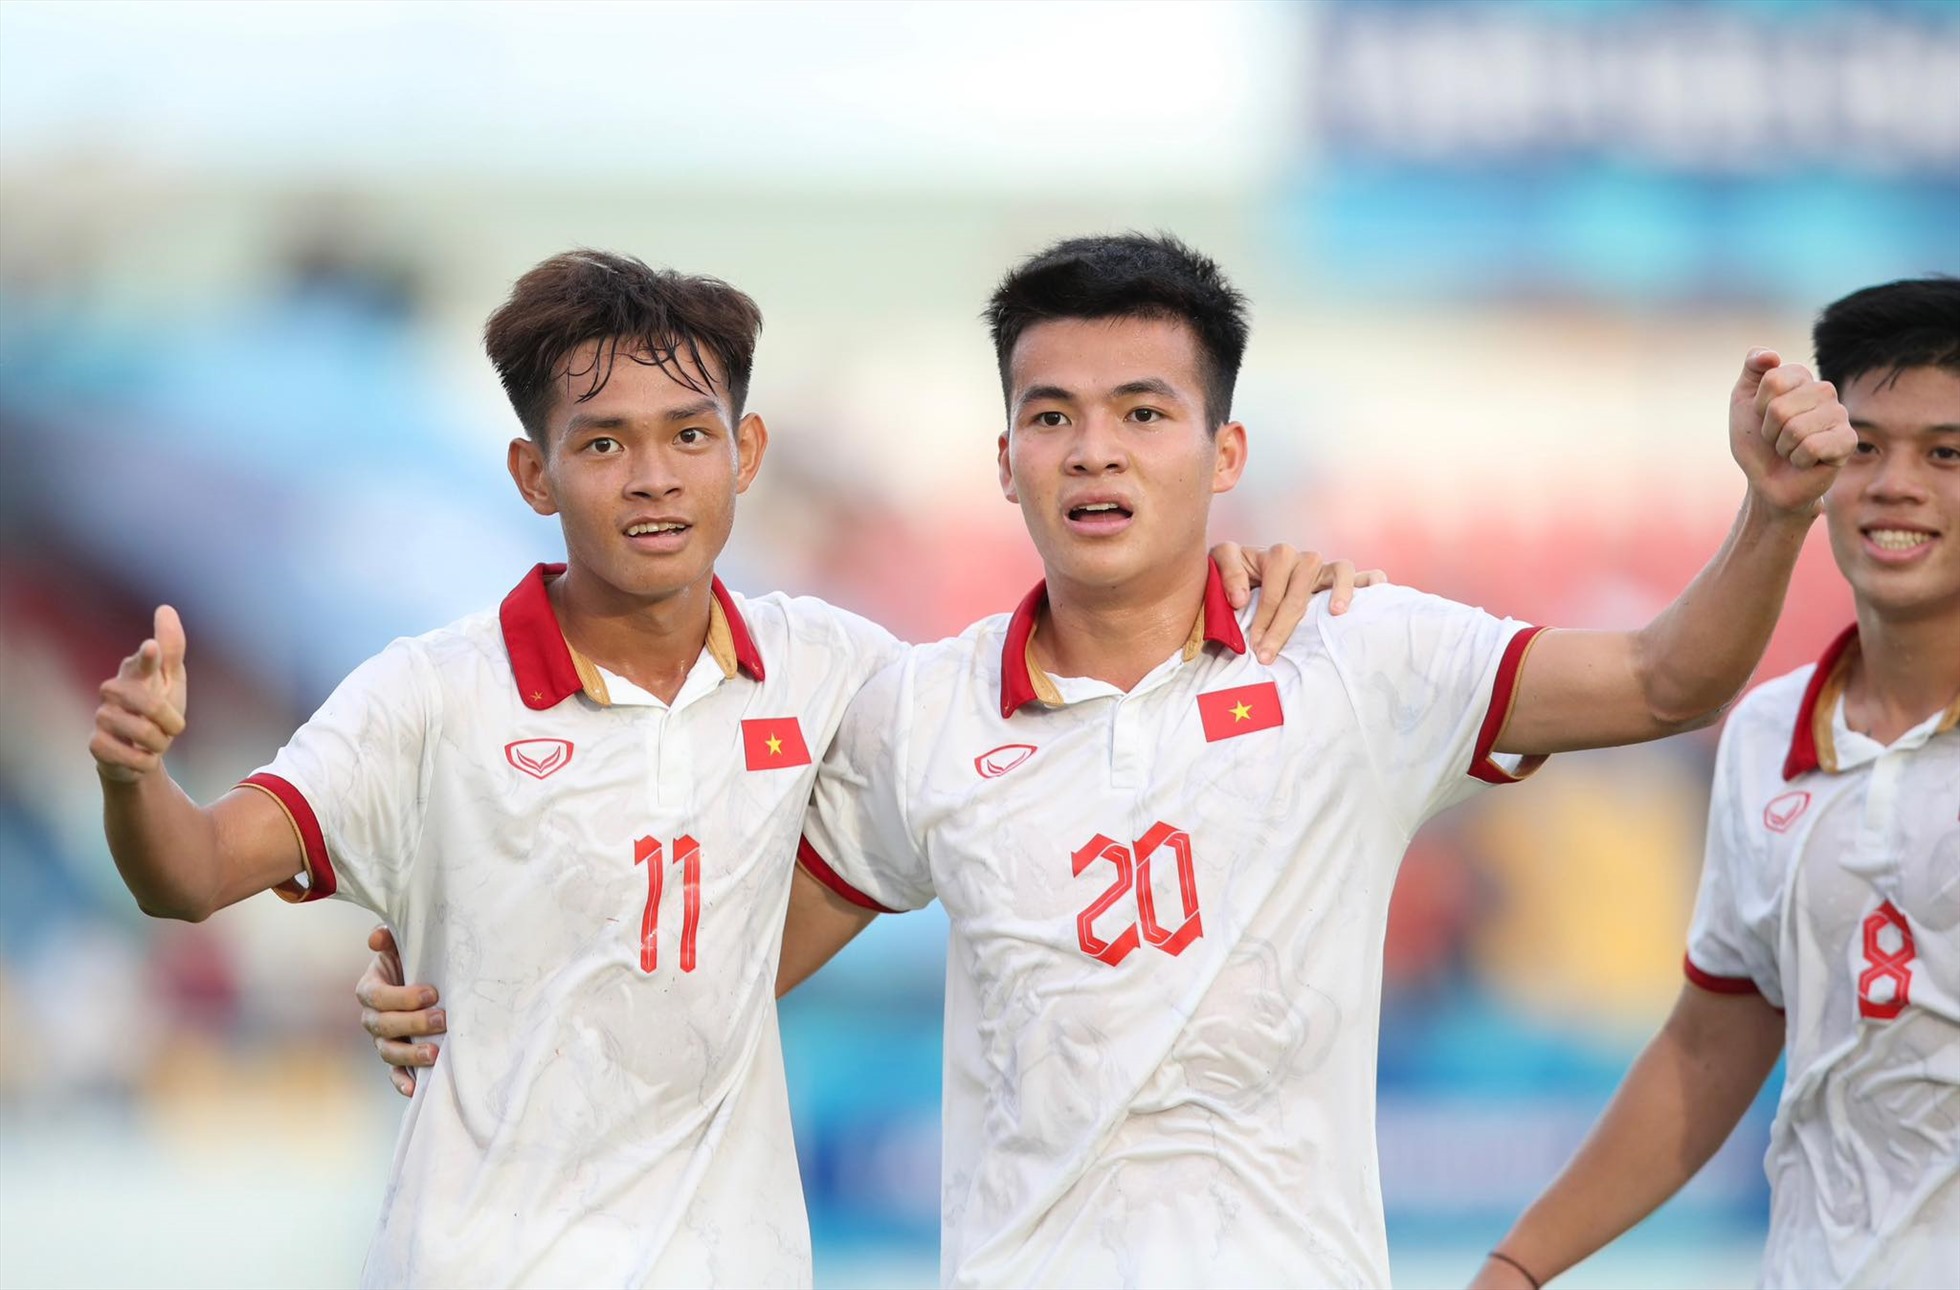 Cuối hiệp 2, Vĩ Hào chuyền ngang từ cánh trái cho Hồng Phúc (20) băng lên dứt điểm ở vị trí thuận lợi, ấn định chiến thắng 4-1 cho U23 Việt Nam.